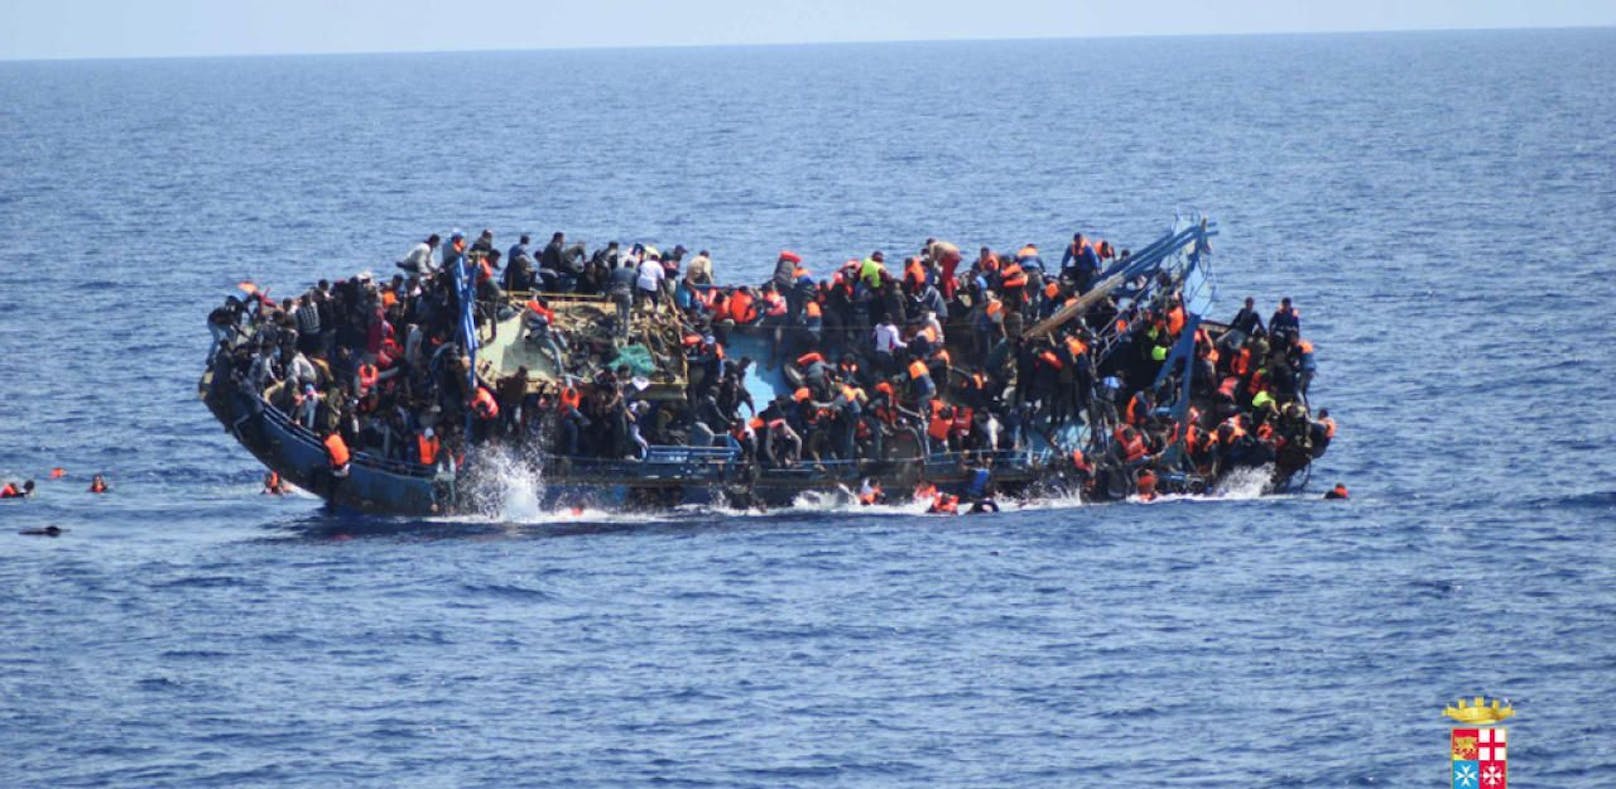 Fluchtbewegung über Ägäis und Mittelmeer: Schutzsuchende begeben sich in Lebensgefahr, Tausende sterben.